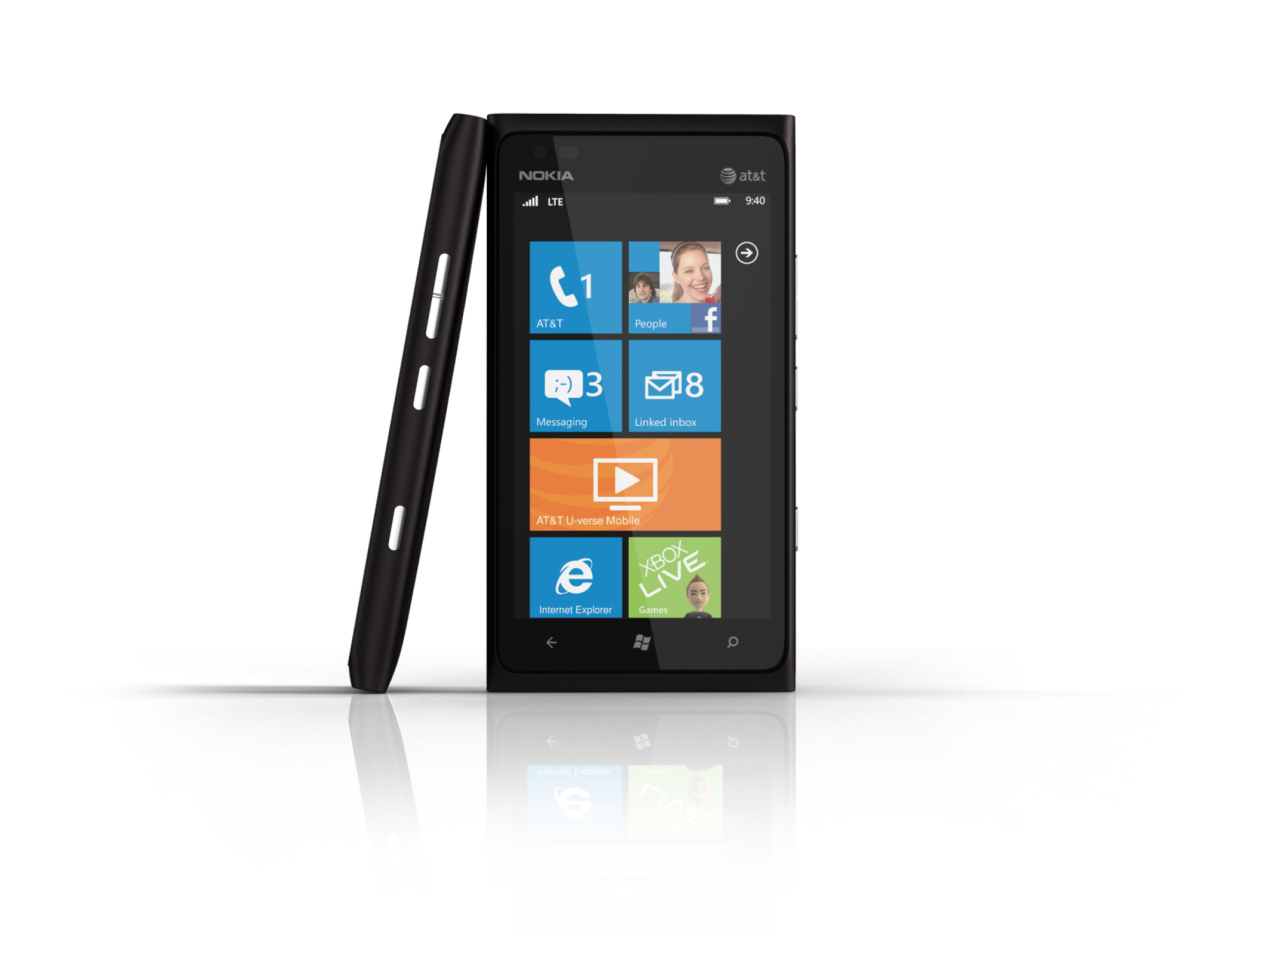 Sfondi Windows Phone Nokia Lumia 900 1280x960